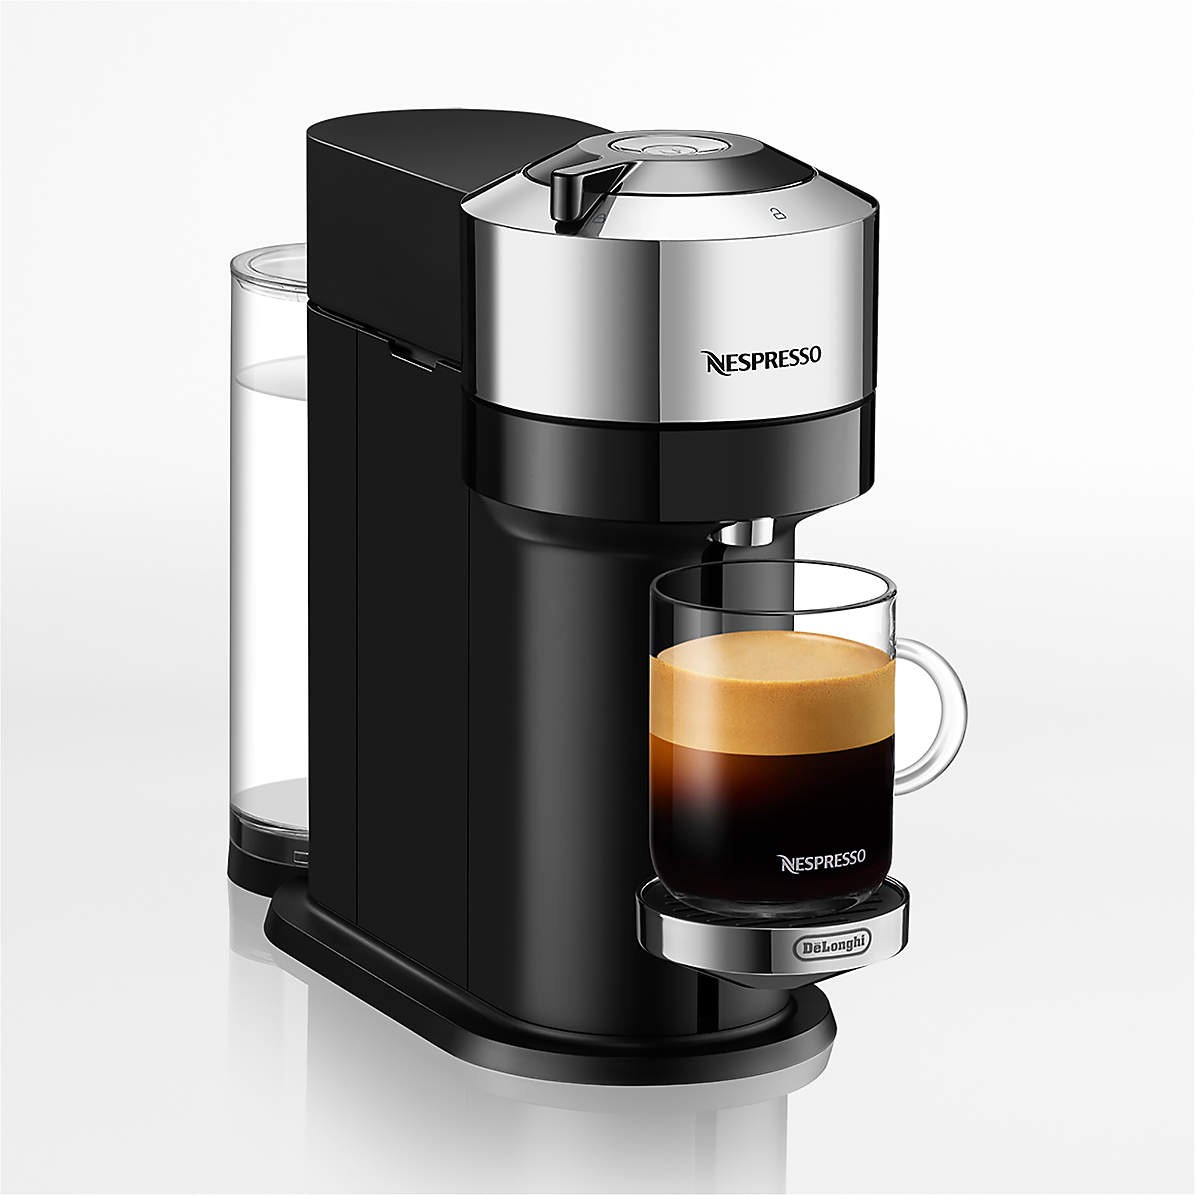 Nespresso Vertuo Next Deluxe Coffee and Espresso Maker by DeLonghi Chrome